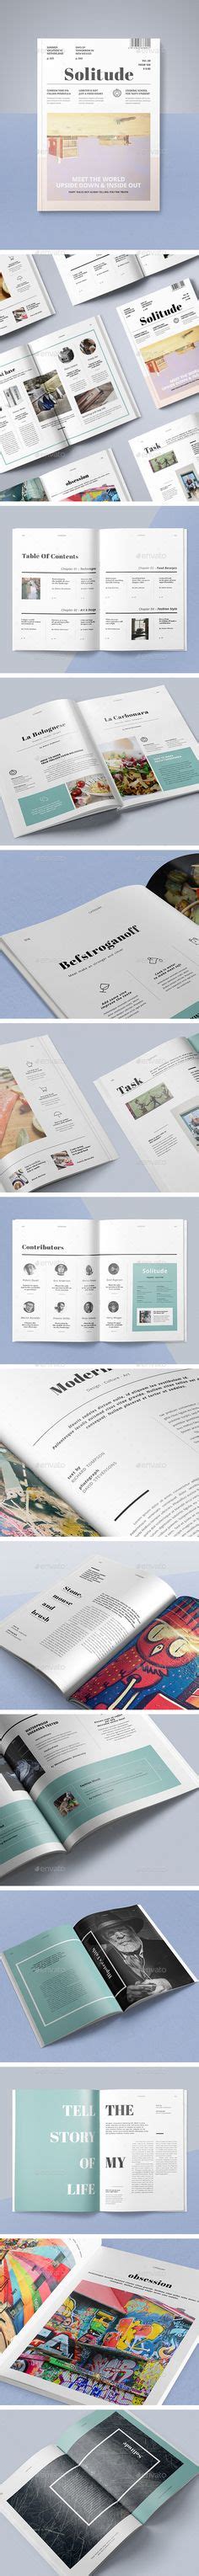 33 Infographic ideas | infographic, infographic design, web design